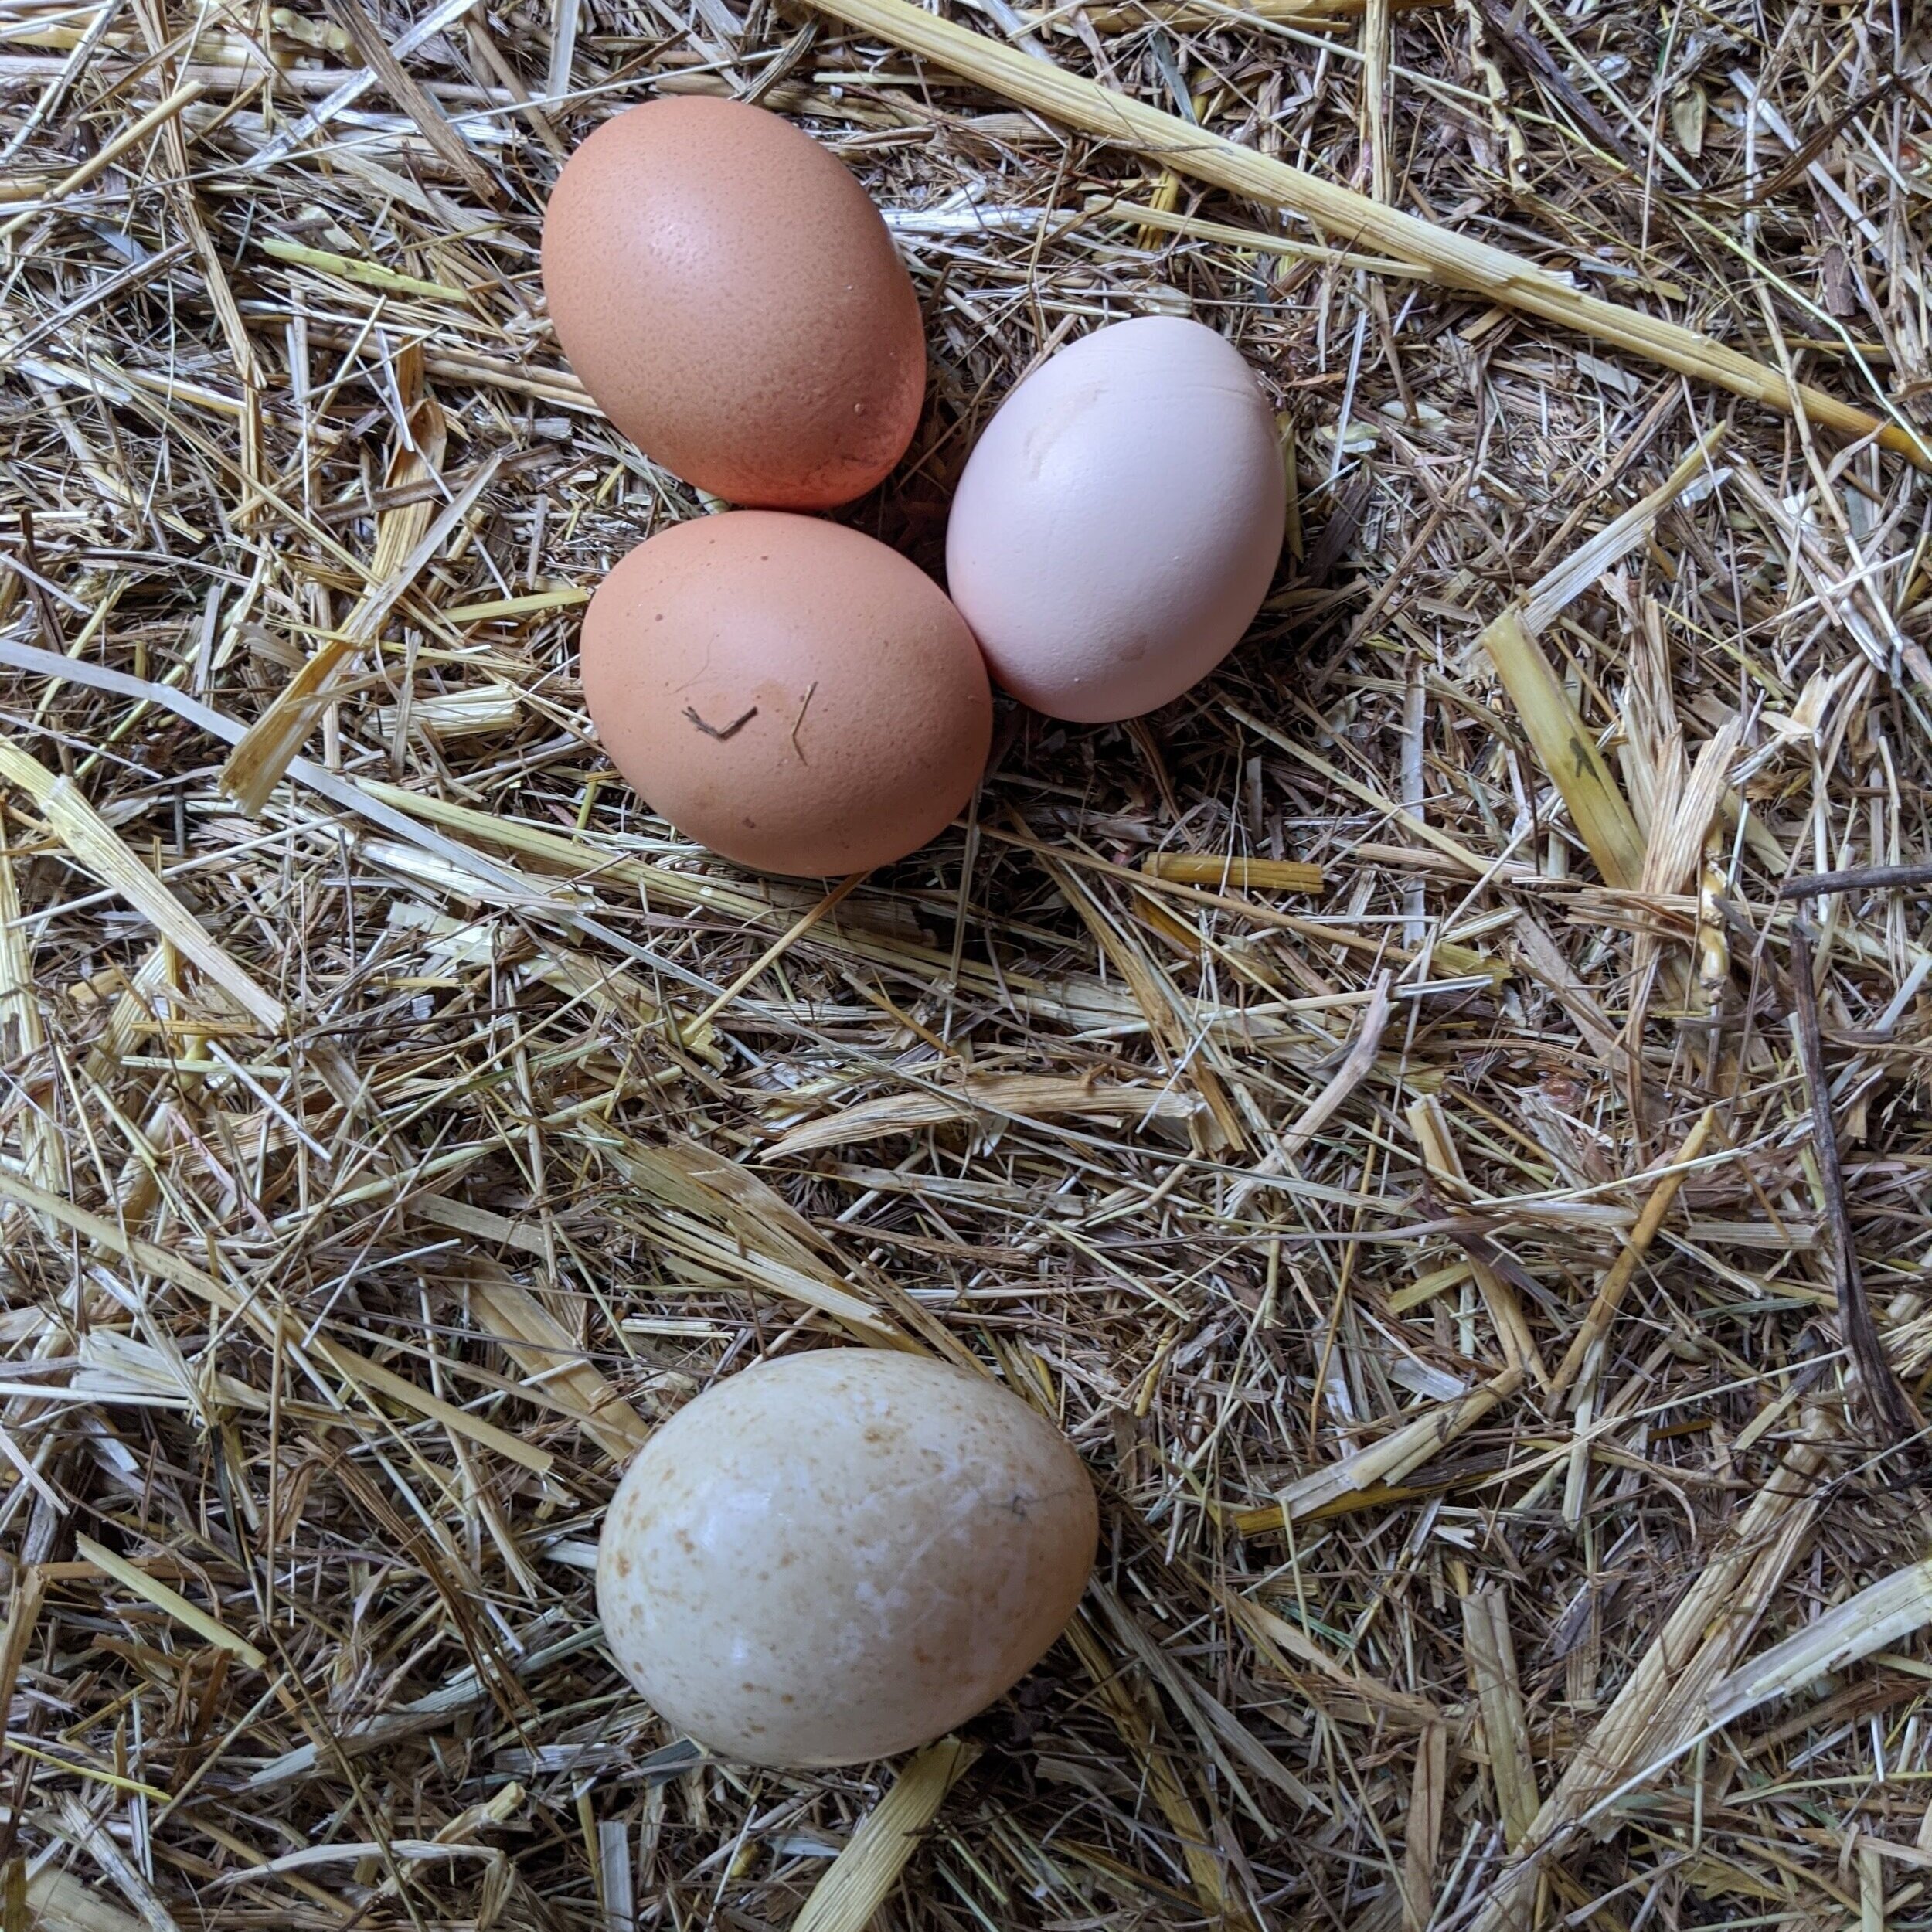 Top: chicken eggs/ Bottom: turkey egg